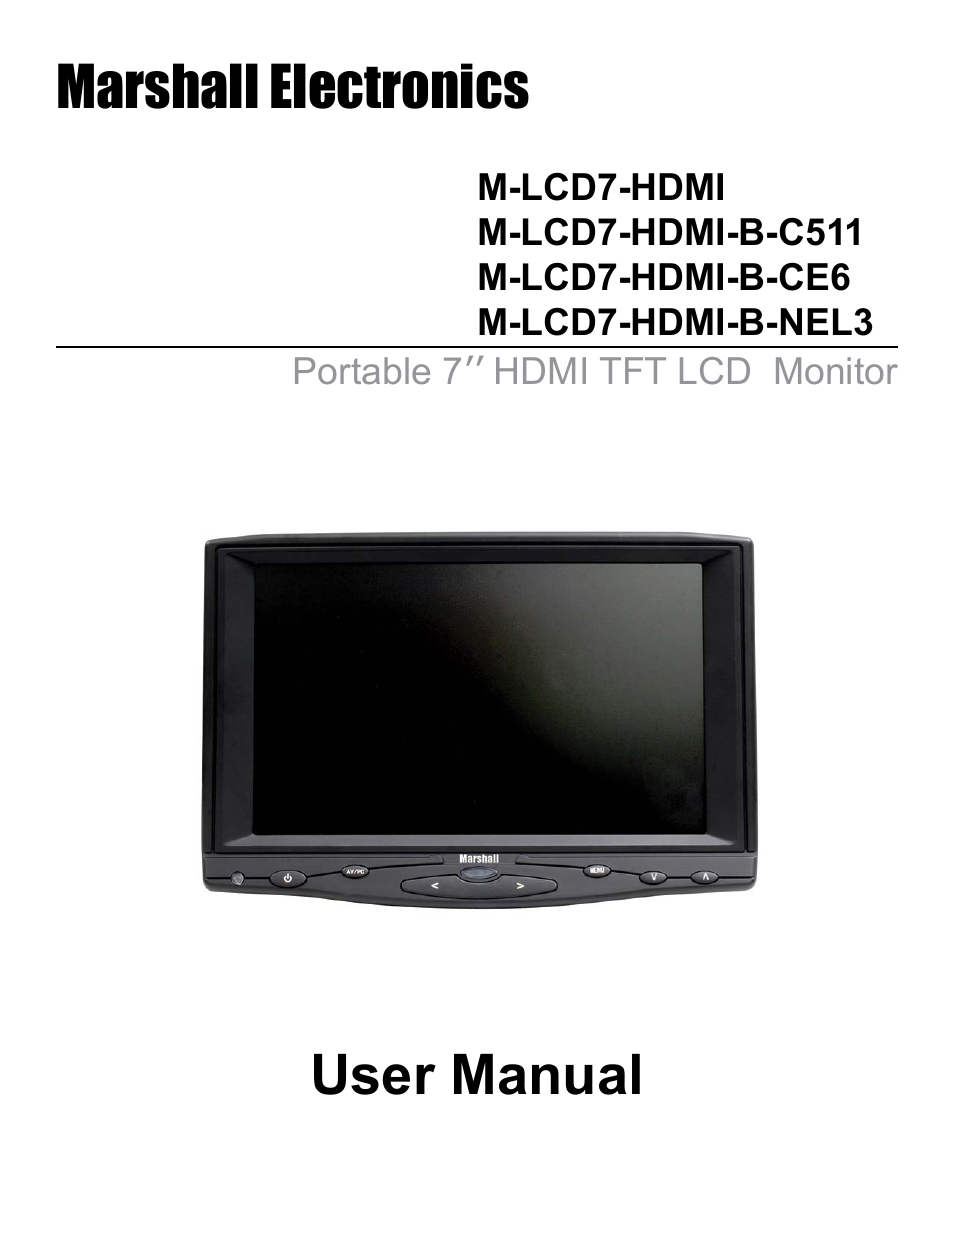 M-LCD7-HDMI-B-NEL3